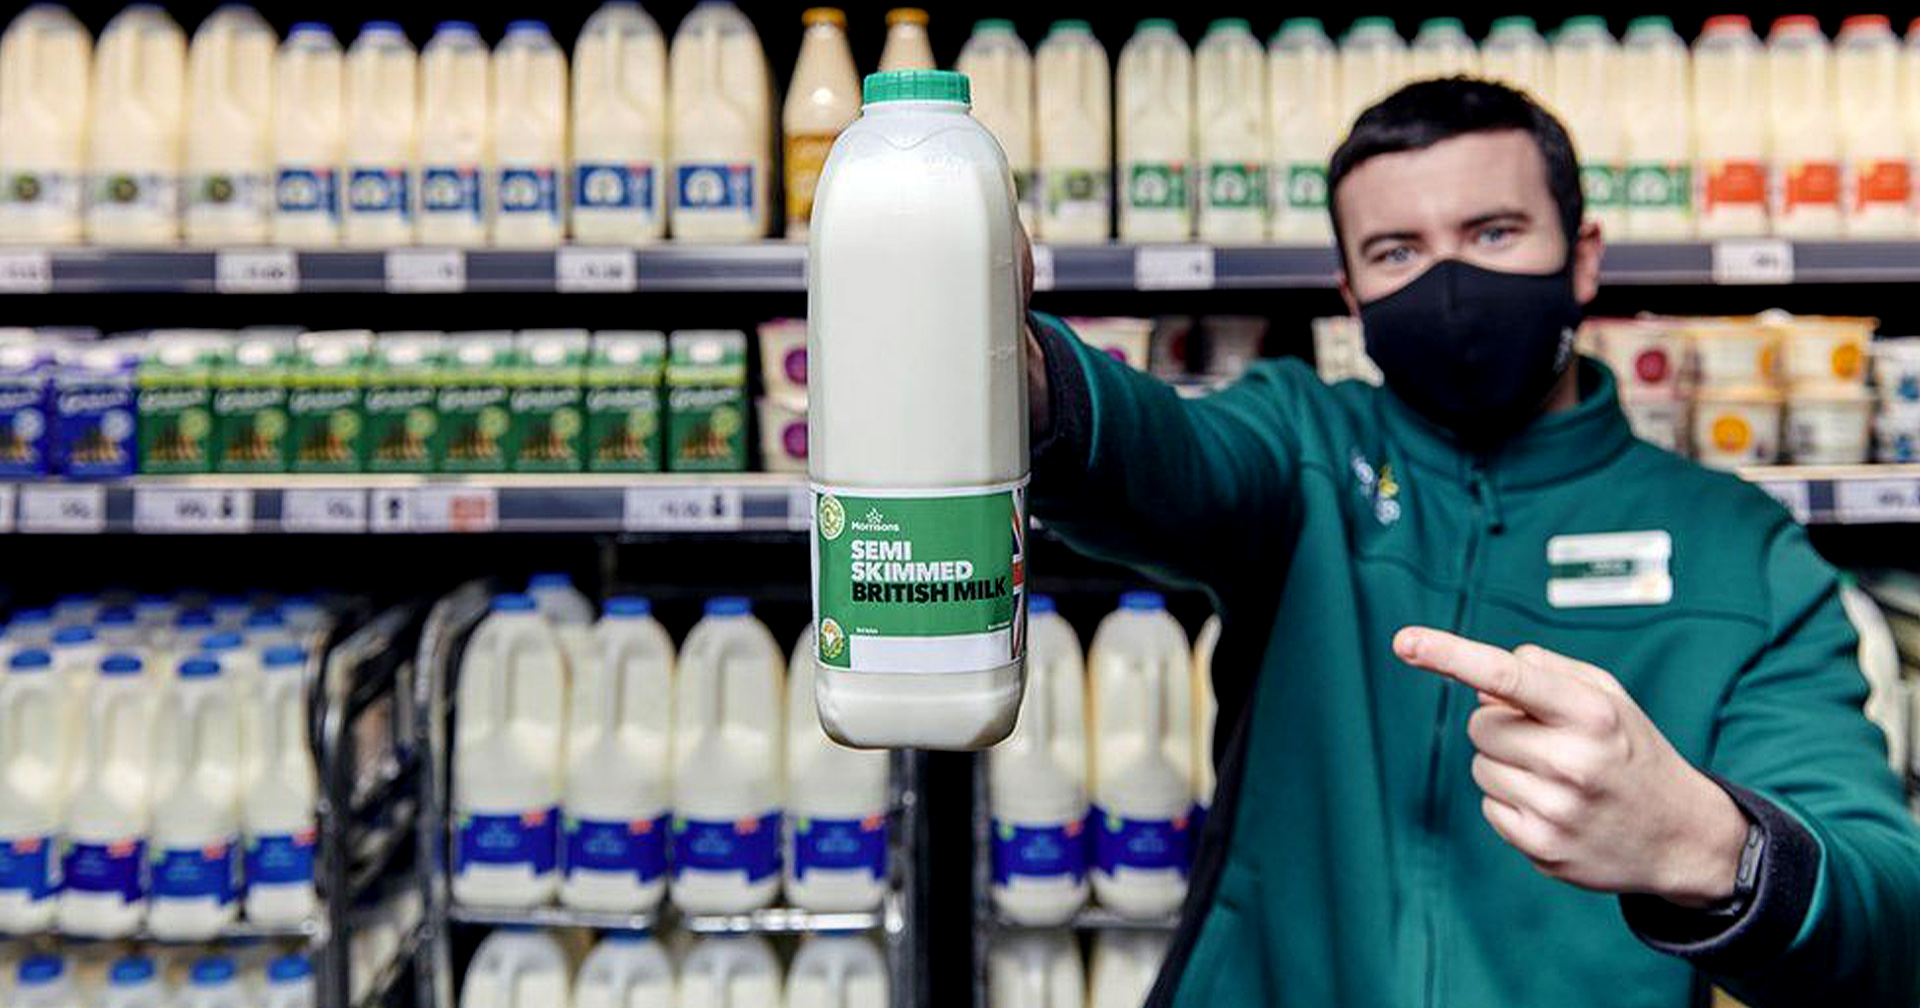 ซูเปอร์มาร์เก็ต Morrisons ในสหราชอาณาจักร ยกเลิกการติดวันหมดอายุบนผลิตภัณฑ์นม เพื่อลดการเสียเปล่า